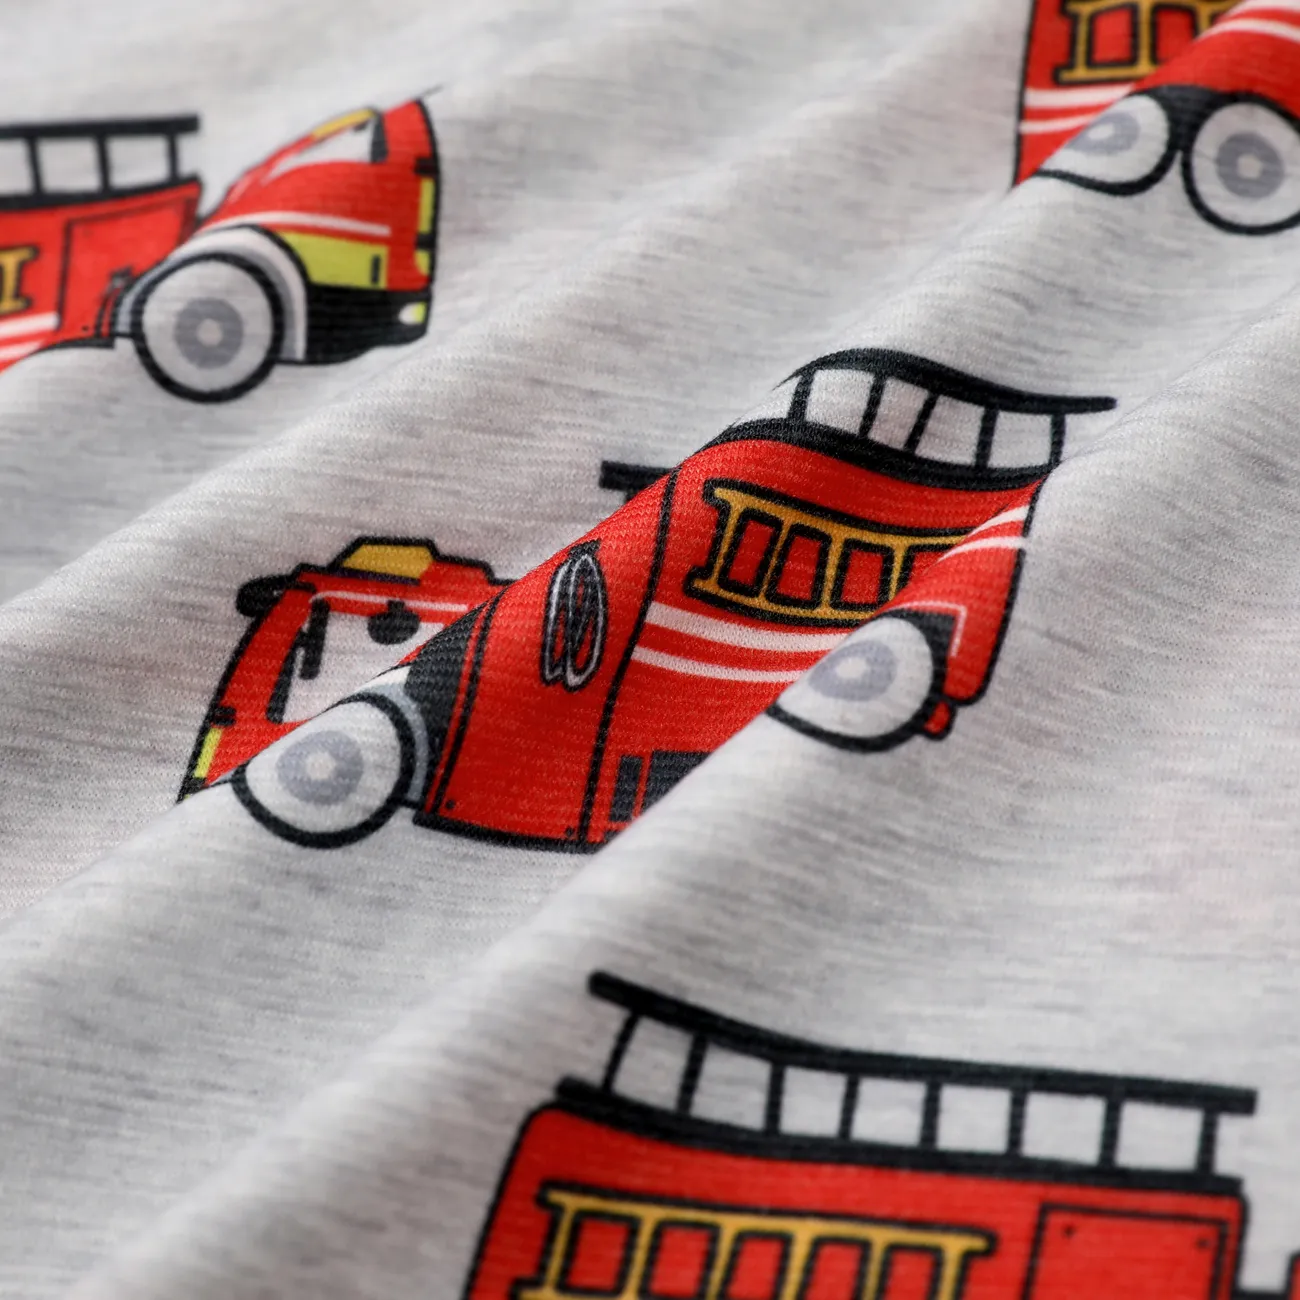 Fahrzeug-gefüttertes Pyjama-Set für Jungen, 1 Stück, verspieltes Design, reguläre Kategorie grau gesprenkelt big image 1